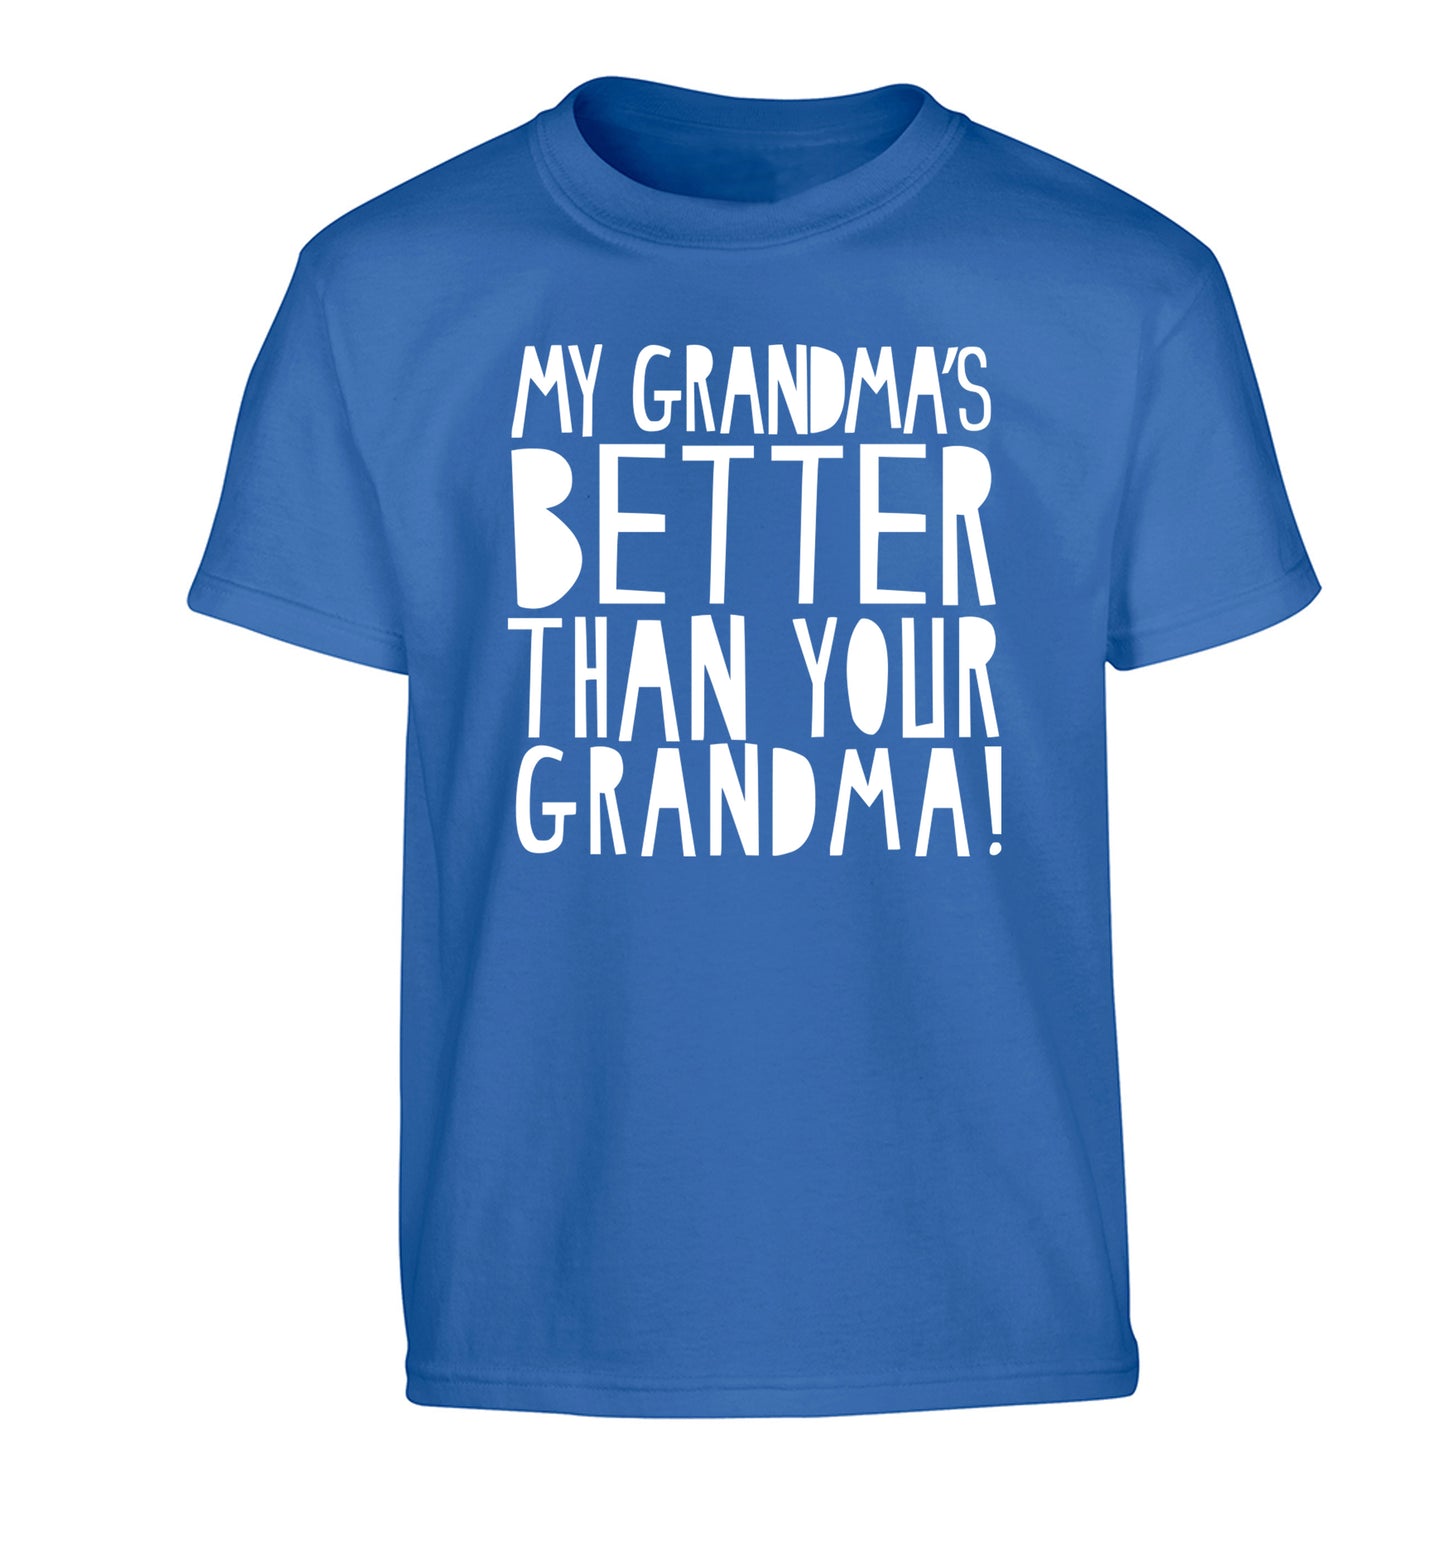 My grandma's better than your grandma Children's blue Tshirt 12-13 Years